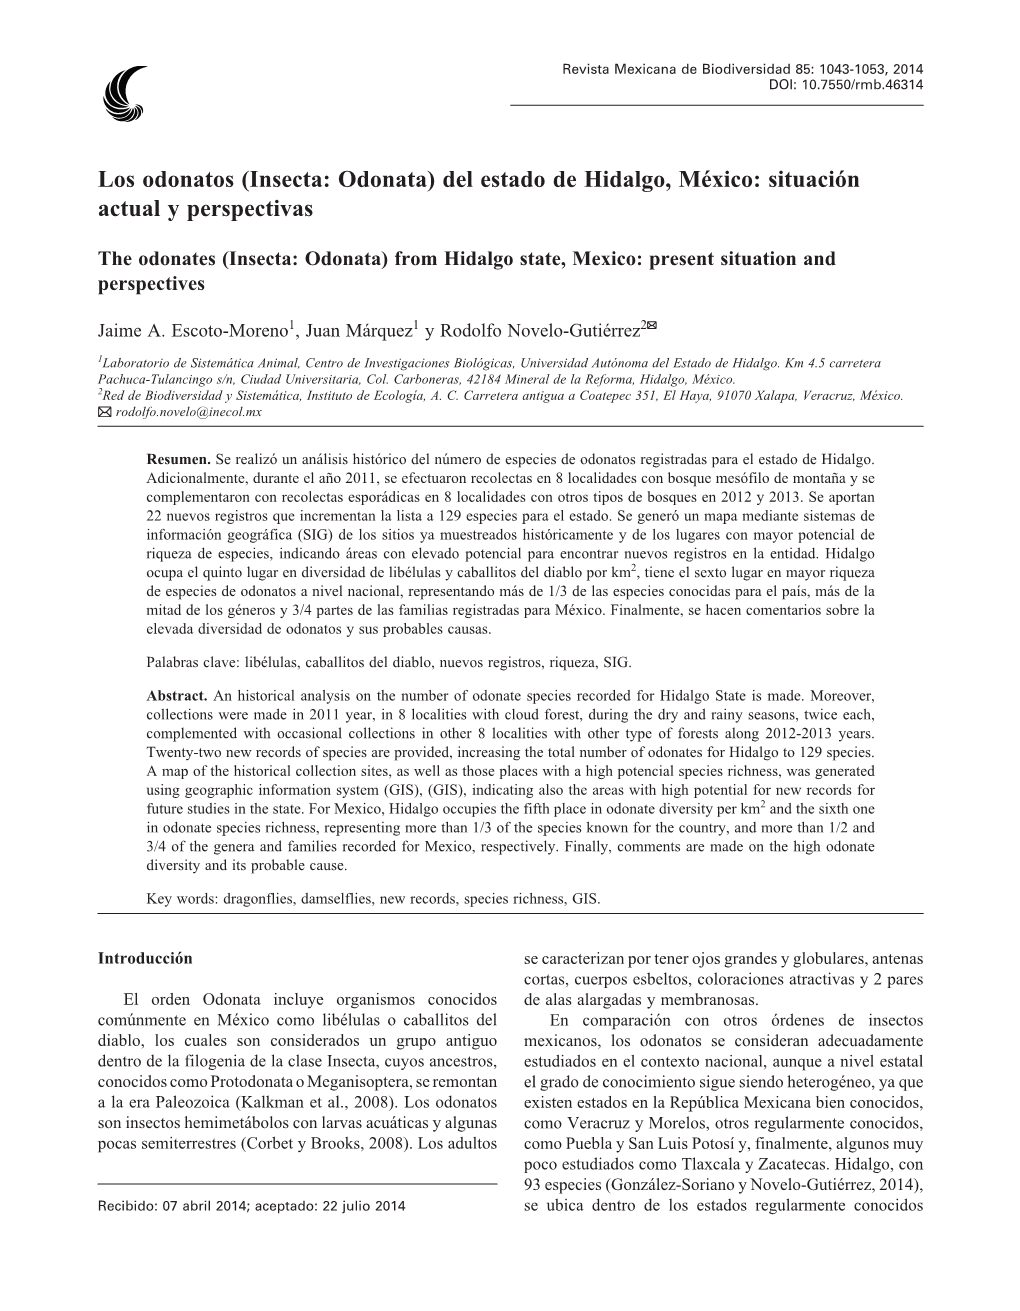 Los Odonatos (Insecta: Odonata) Del Estado De Hidalgo, México: Situación Actual Y Perspectivas